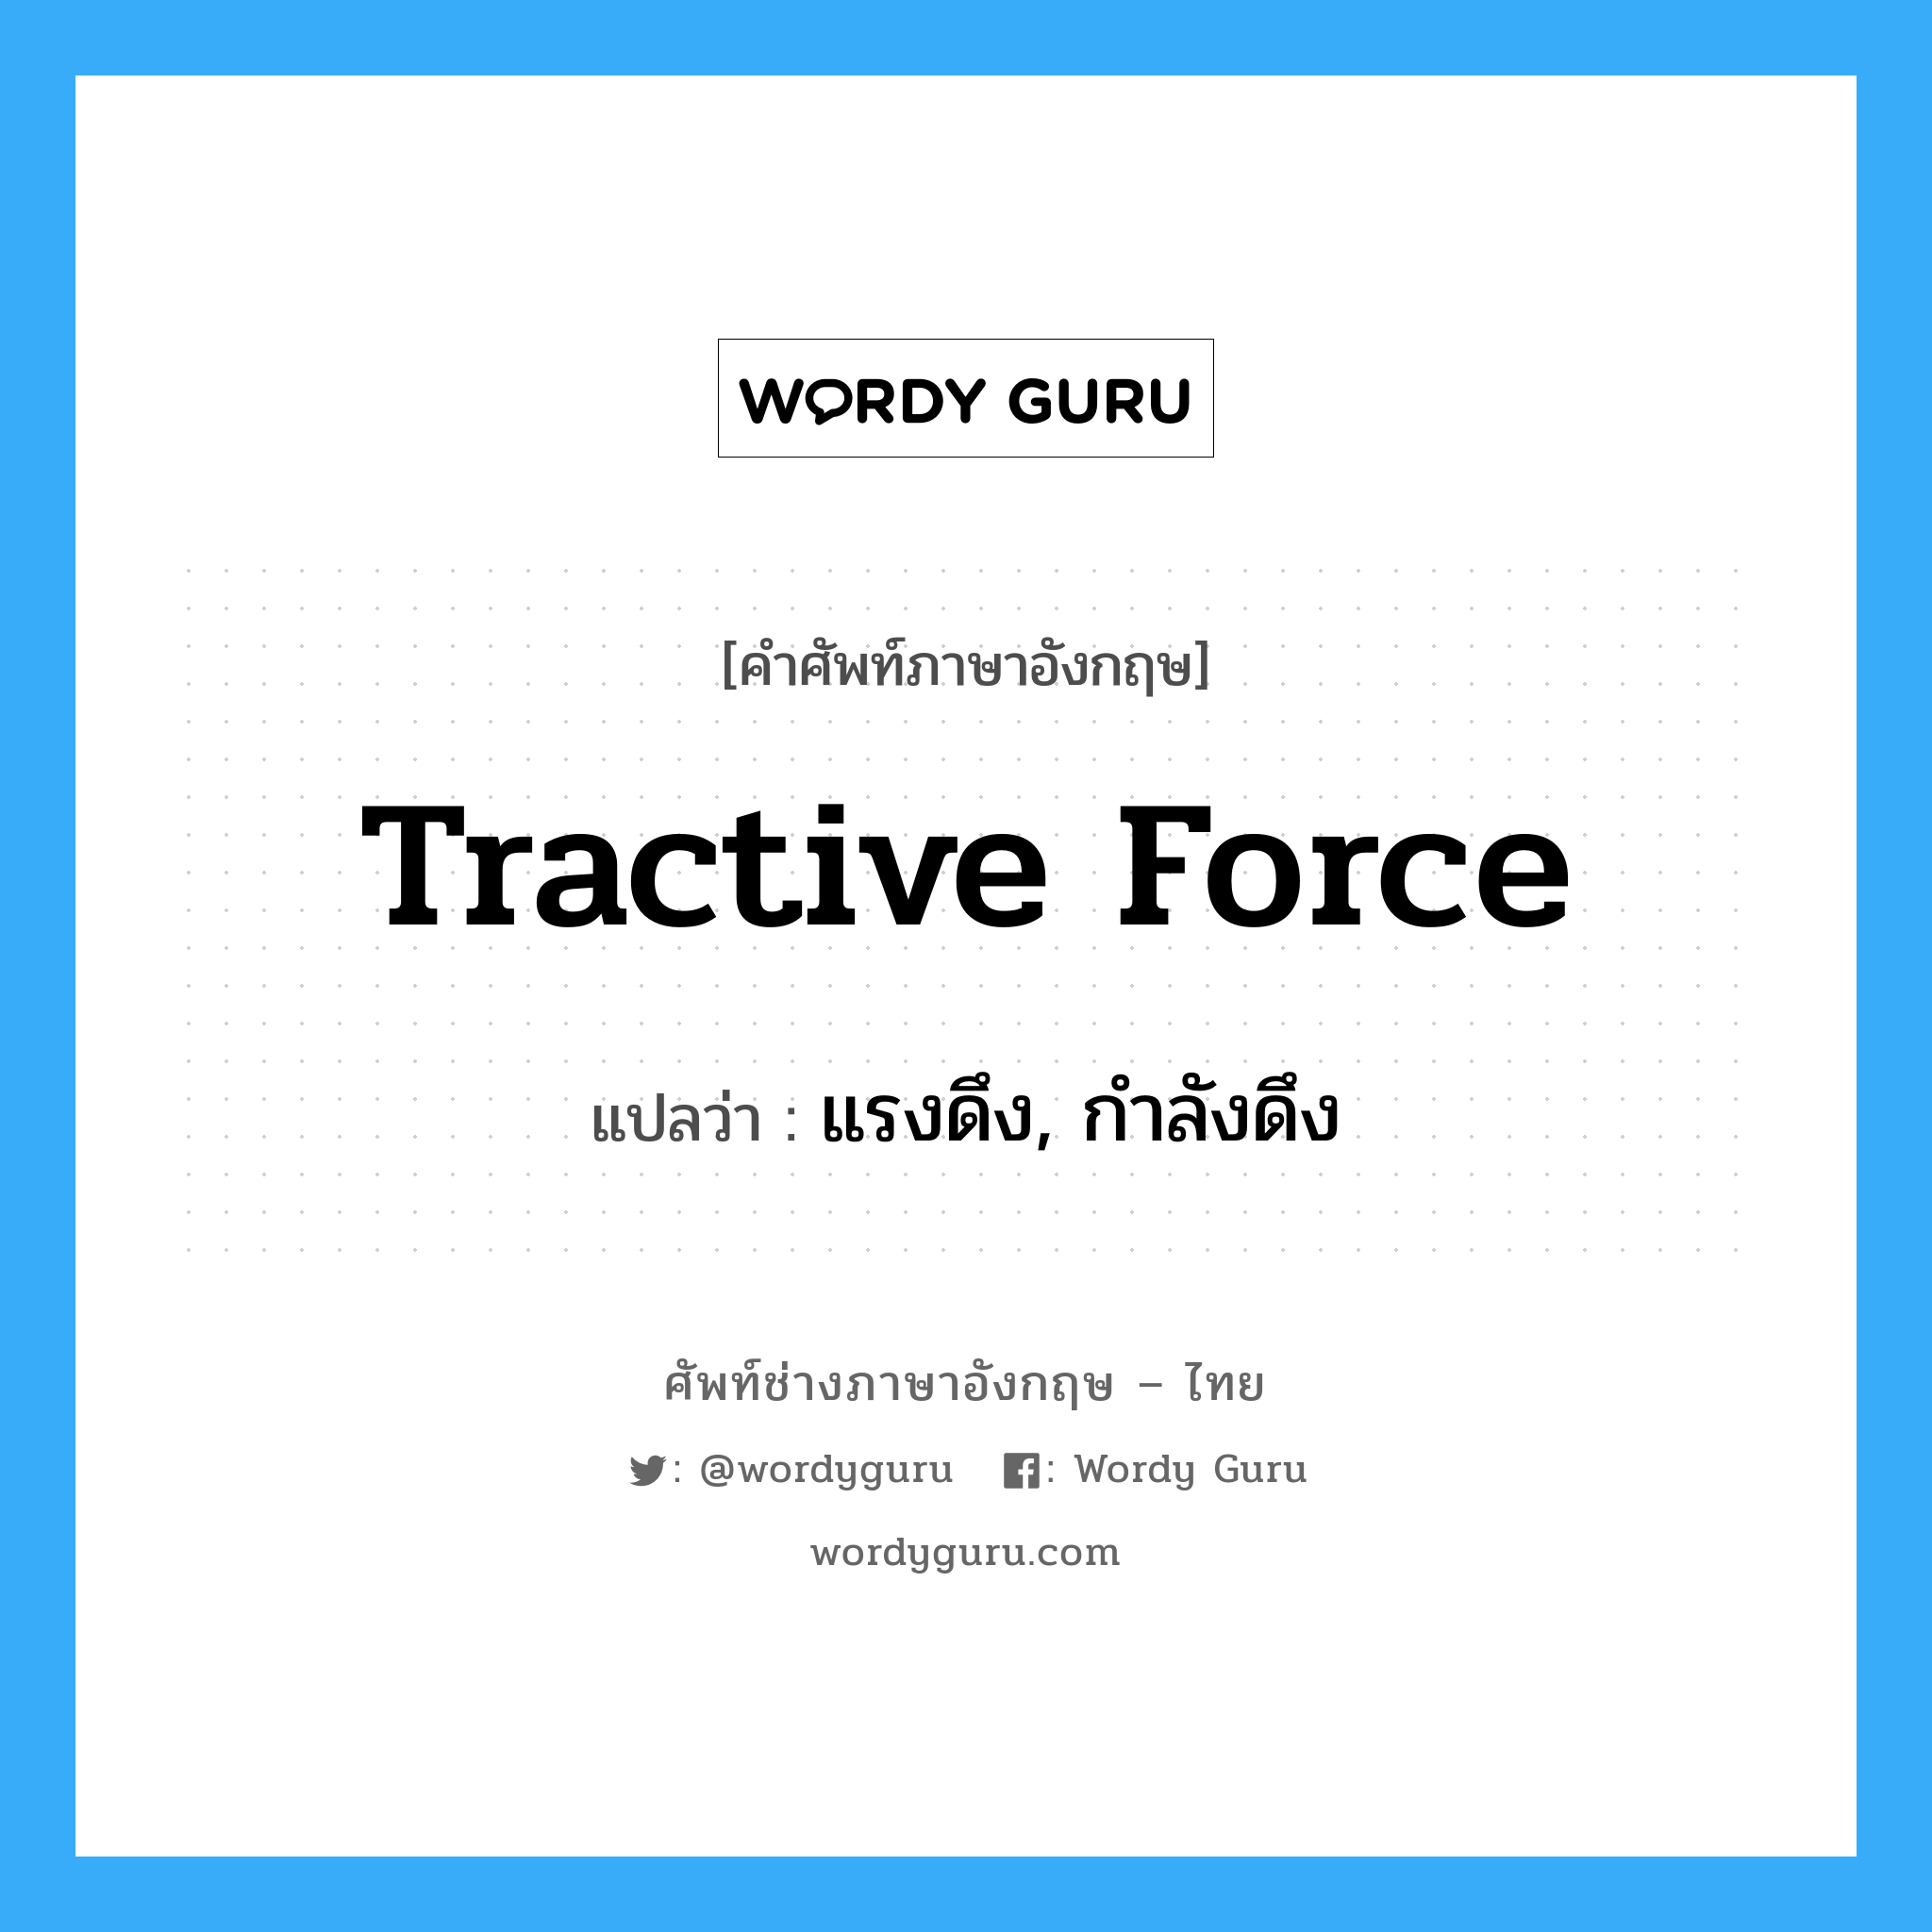 tractive force แปลว่า?, คำศัพท์ช่างภาษาอังกฤษ - ไทย tractive force คำศัพท์ภาษาอังกฤษ tractive force แปลว่า แรงดึง, กำลังดึง